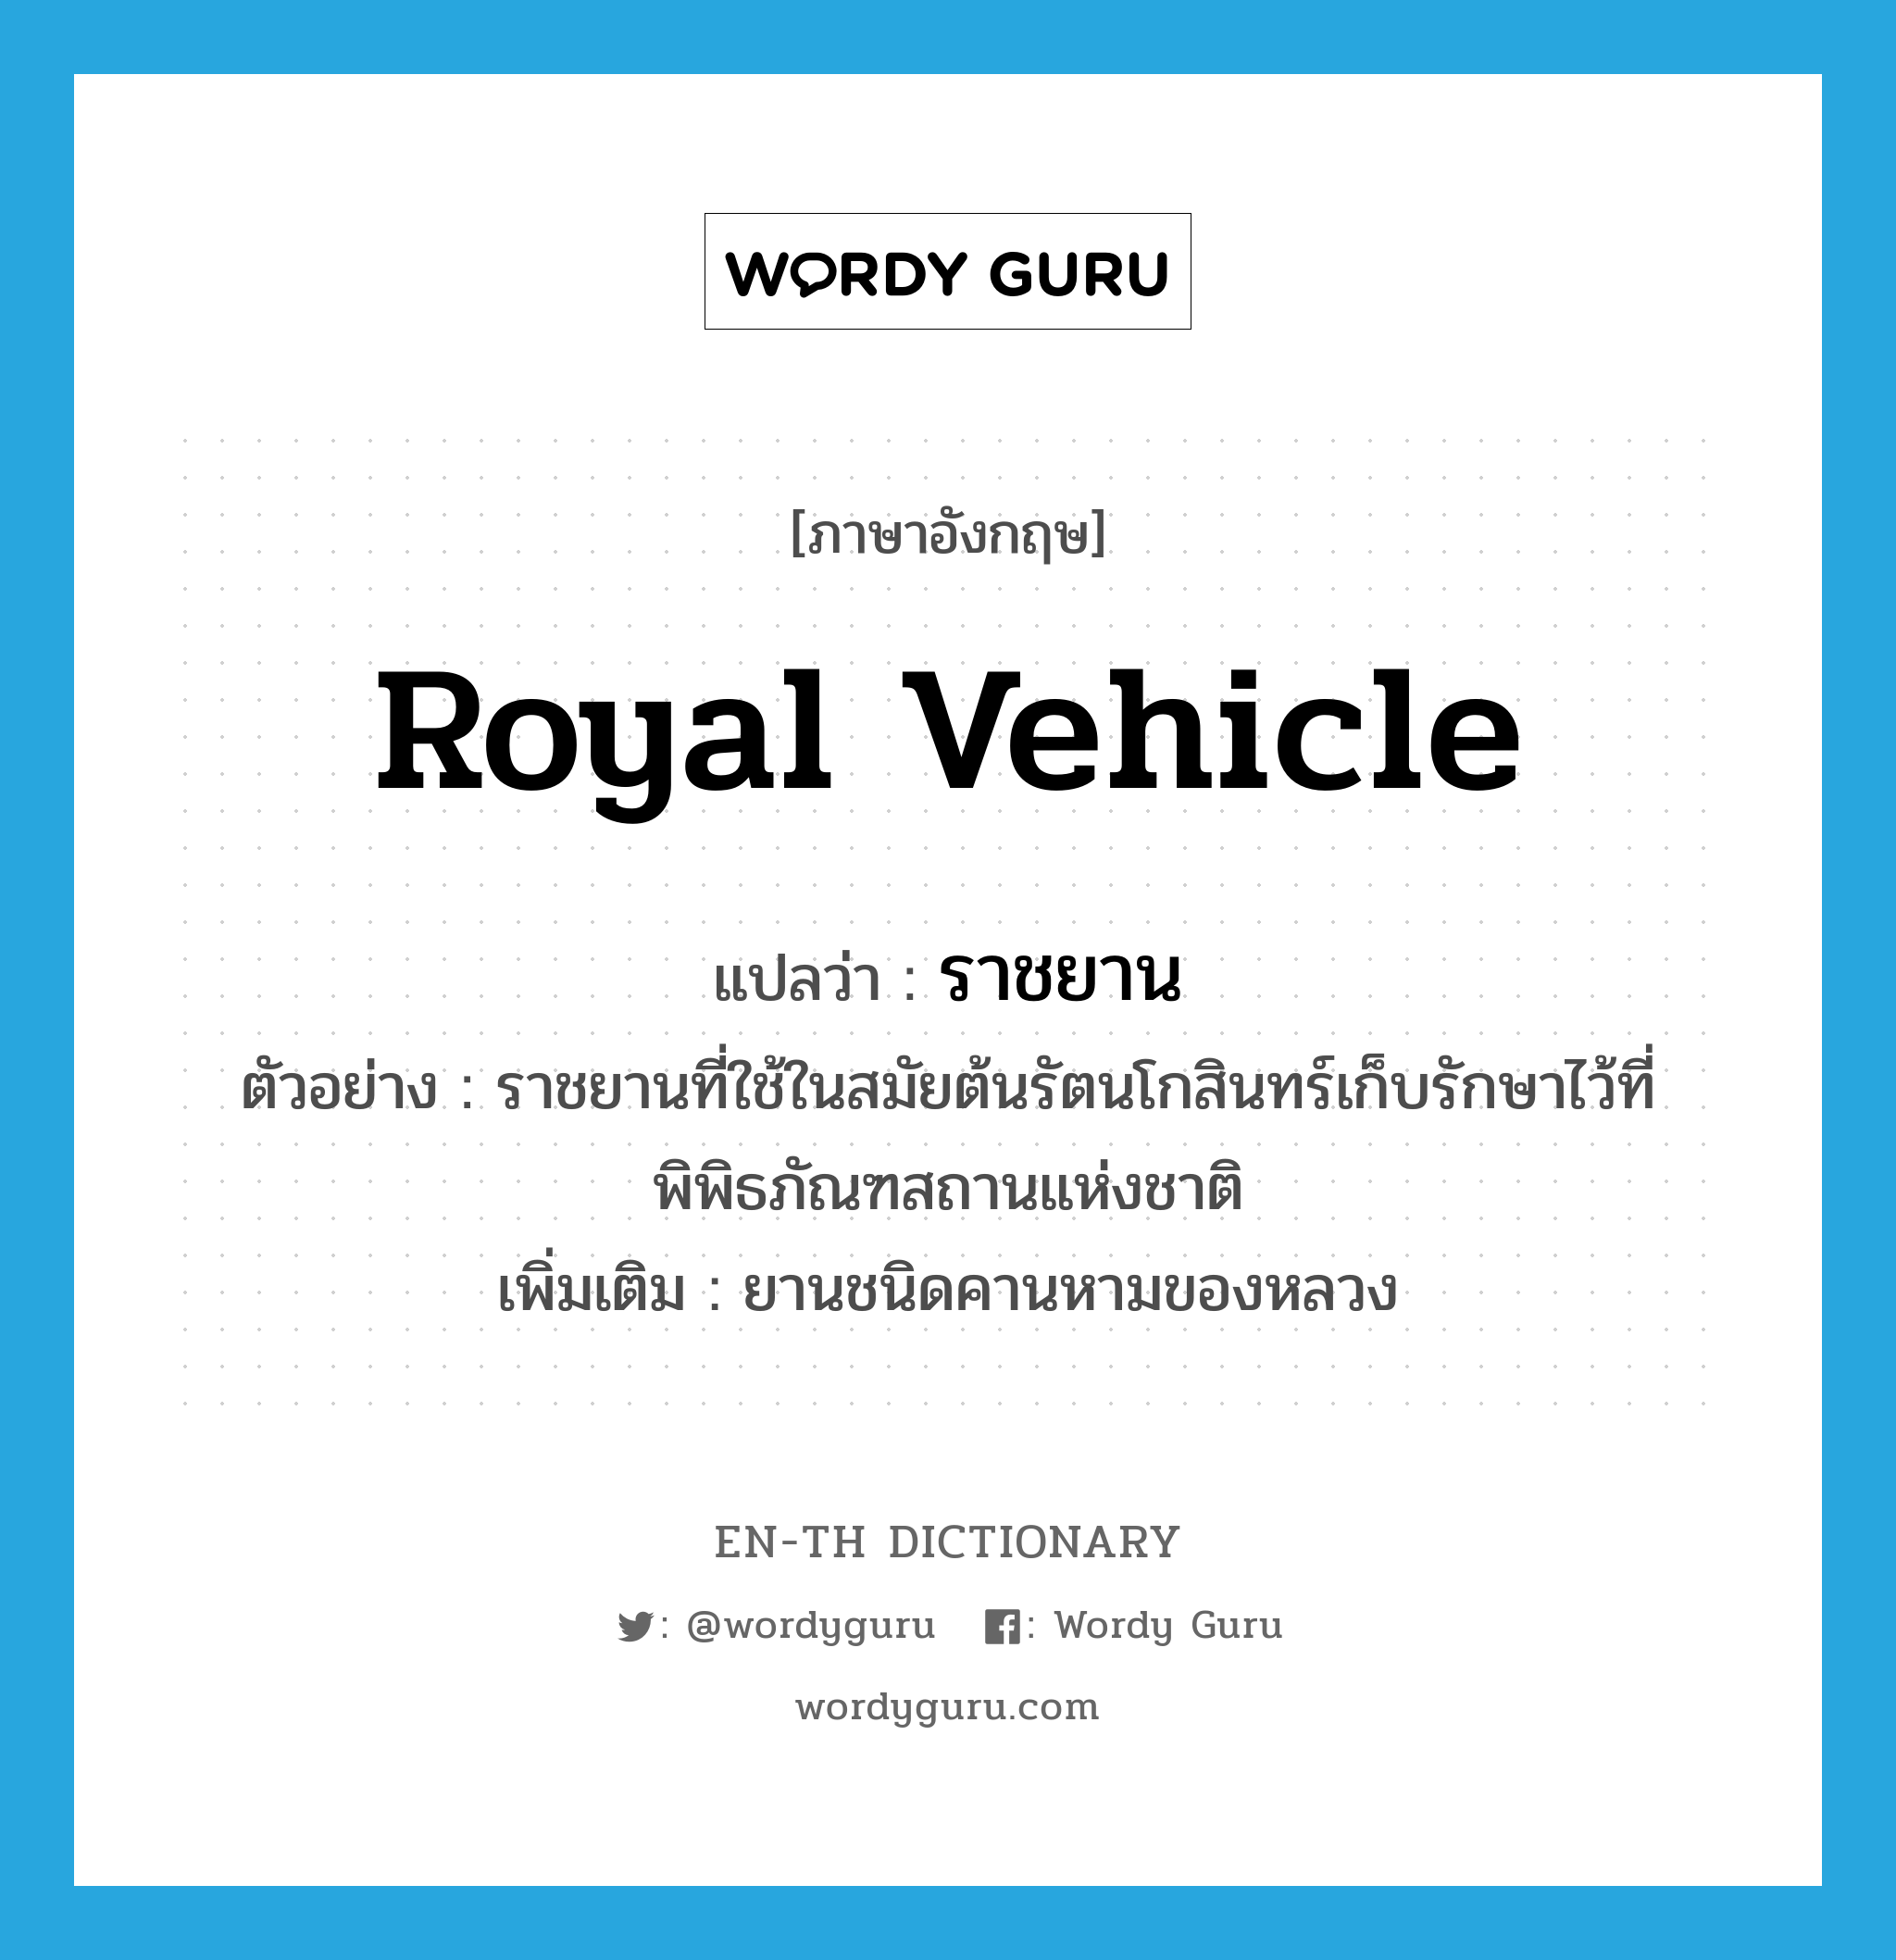 royal vehicle แปลว่า?, คำศัพท์ภาษาอังกฤษ royal vehicle แปลว่า ราชยาน ประเภท N ตัวอย่าง ราชยานที่ใช้ในสมัยต้นรัตนโกสินทร์เก็บรักษาไว้ที่พิพิธภัณฑสถานแห่งชาติ เพิ่มเติม ยานชนิดคานหามของหลวง หมวด N